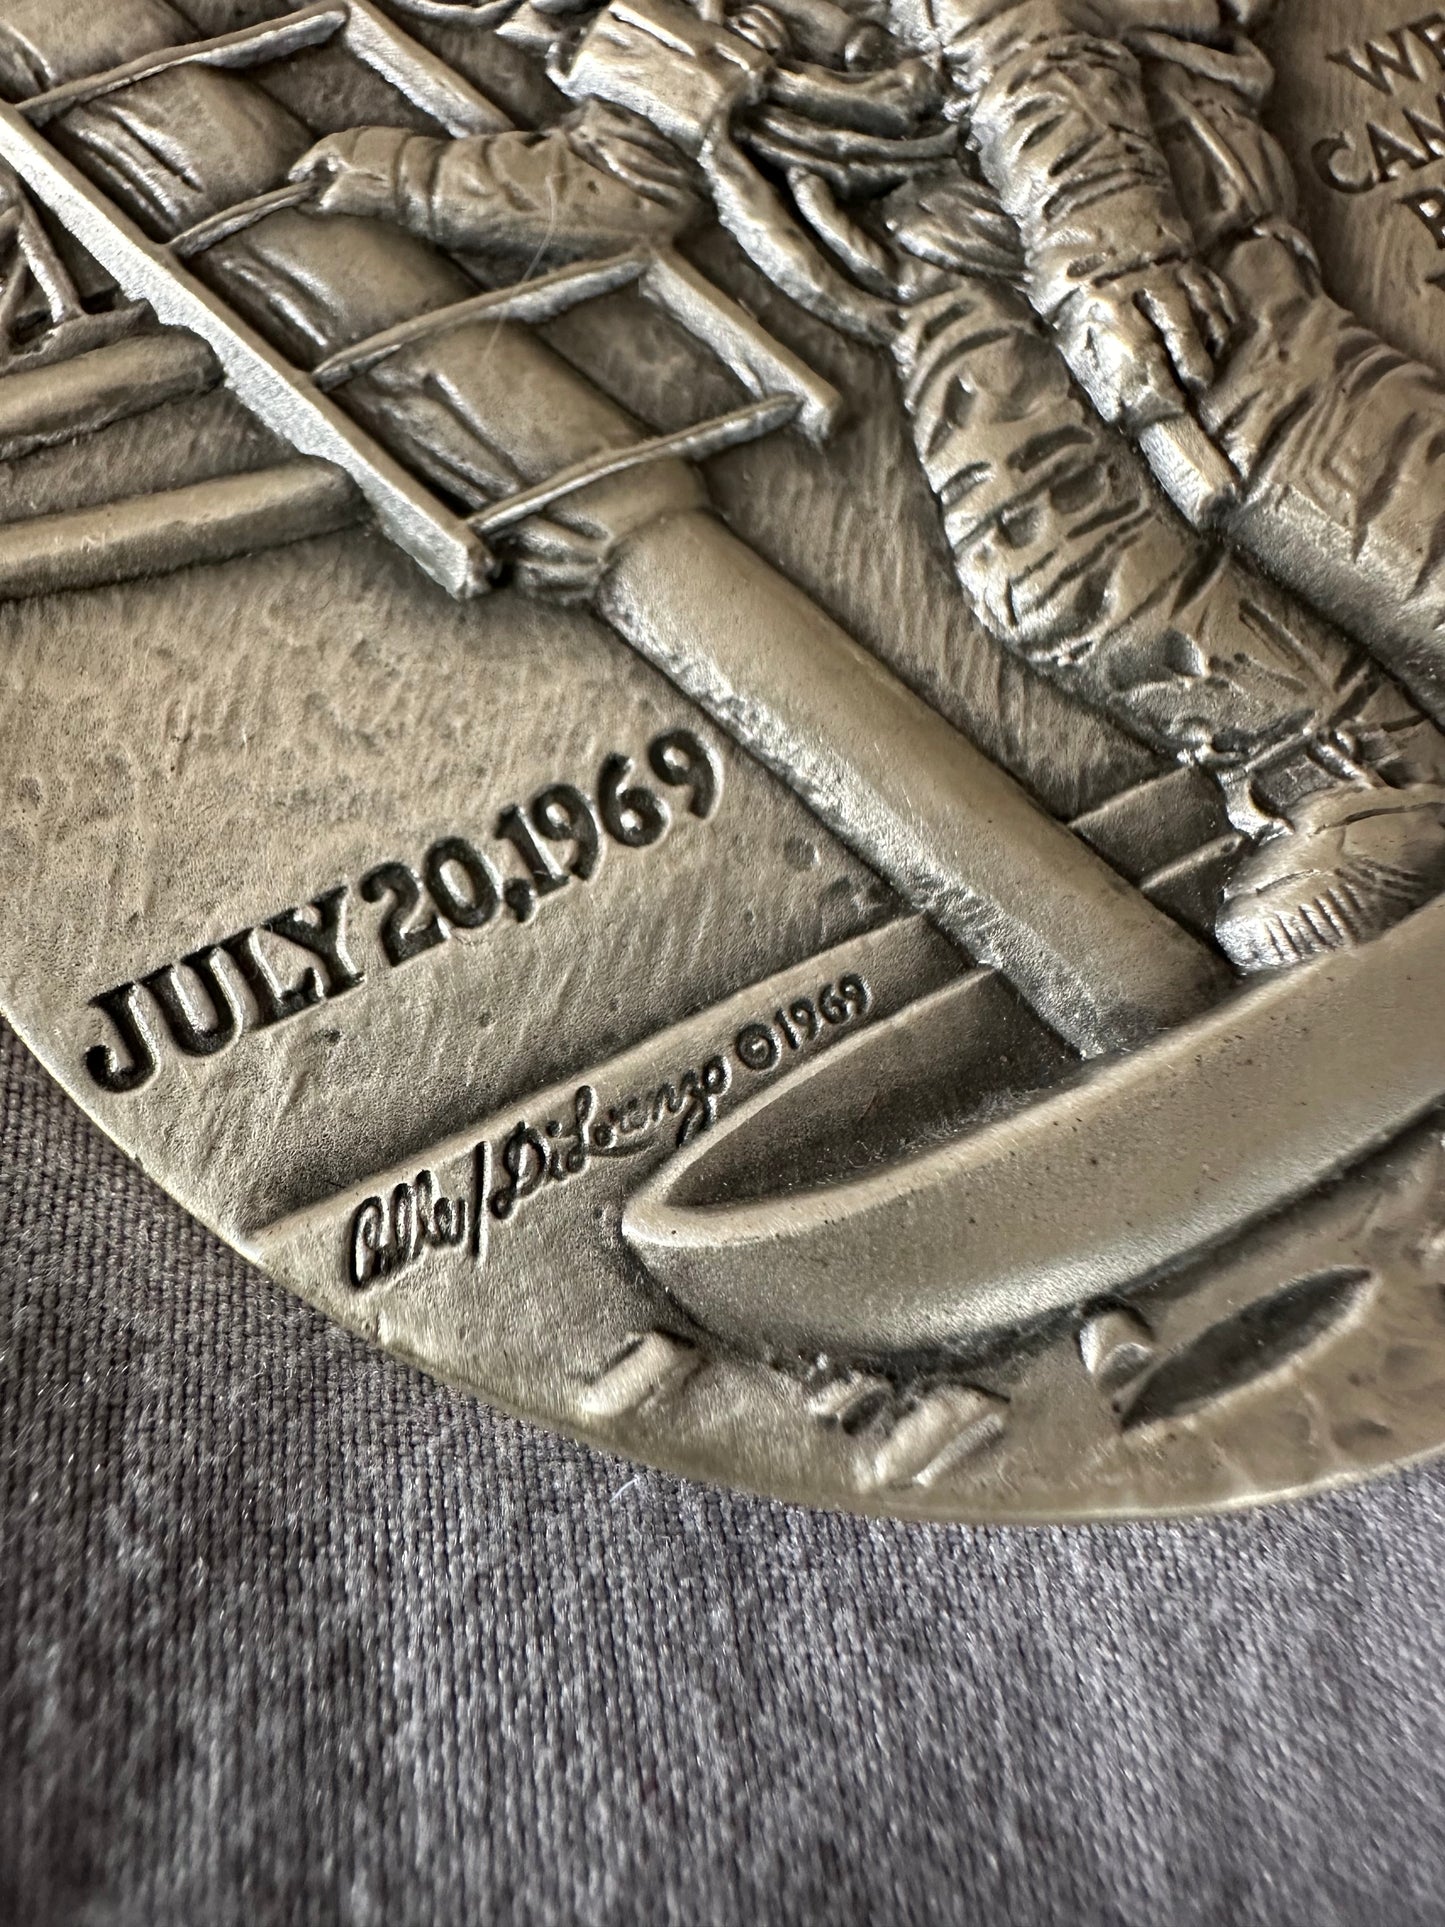 Apollo 11 NASA Goddard Medal .999 Silver Medallic Art Co About 5oz HighRelief